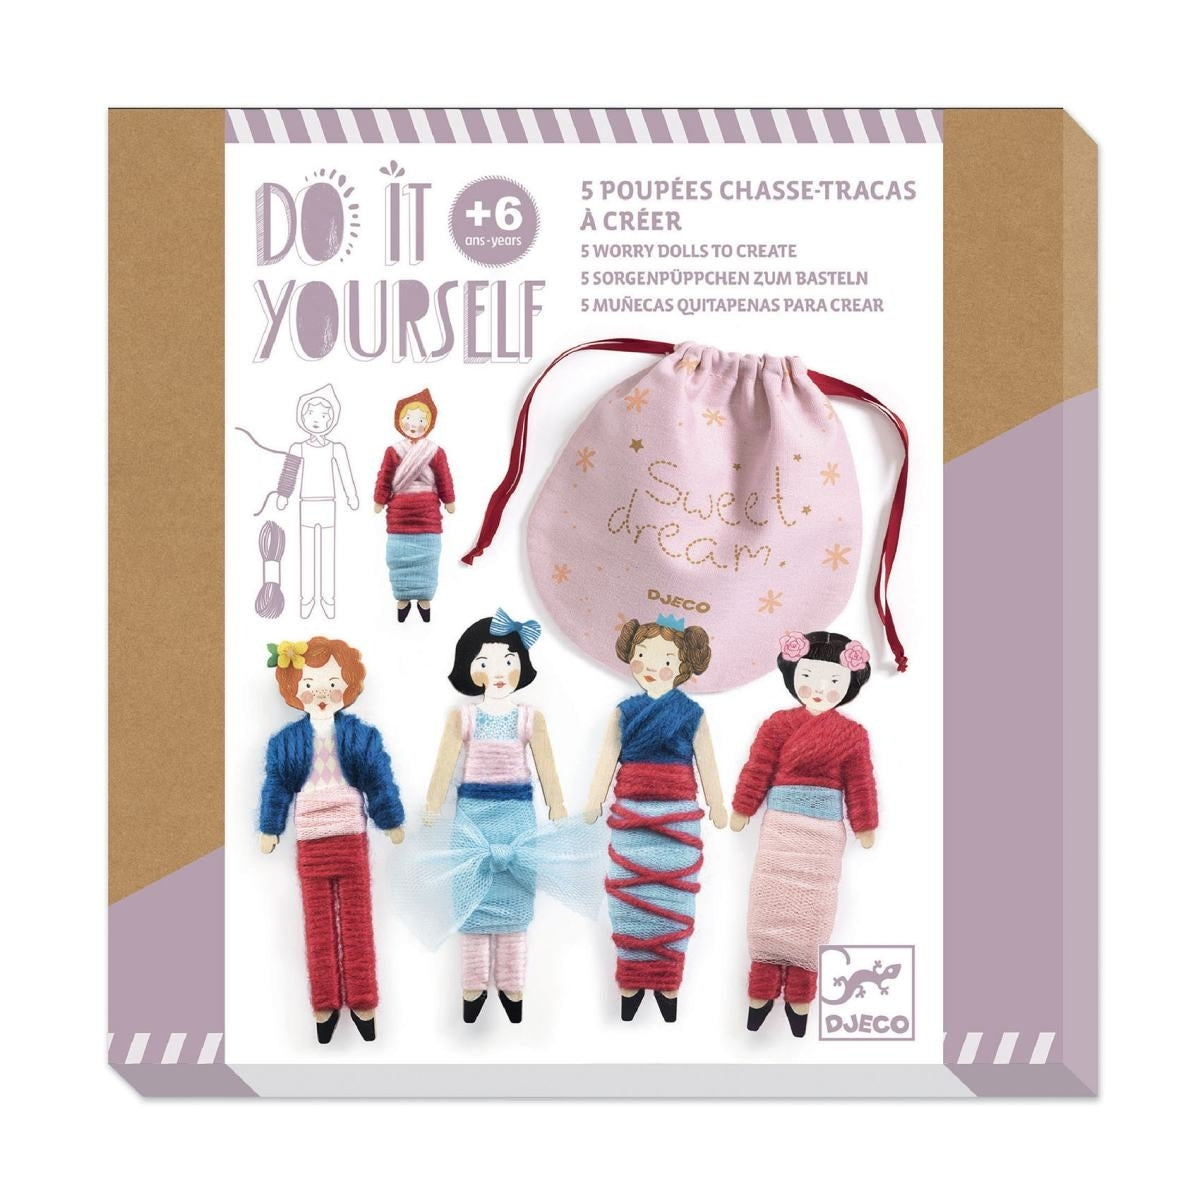 5 Sorgenpüppchen zum Basteln: Die kleinen Puppen sollen mit Wolle und farbigem Tüll, der im Set enthalten ist, bekleidet werden.